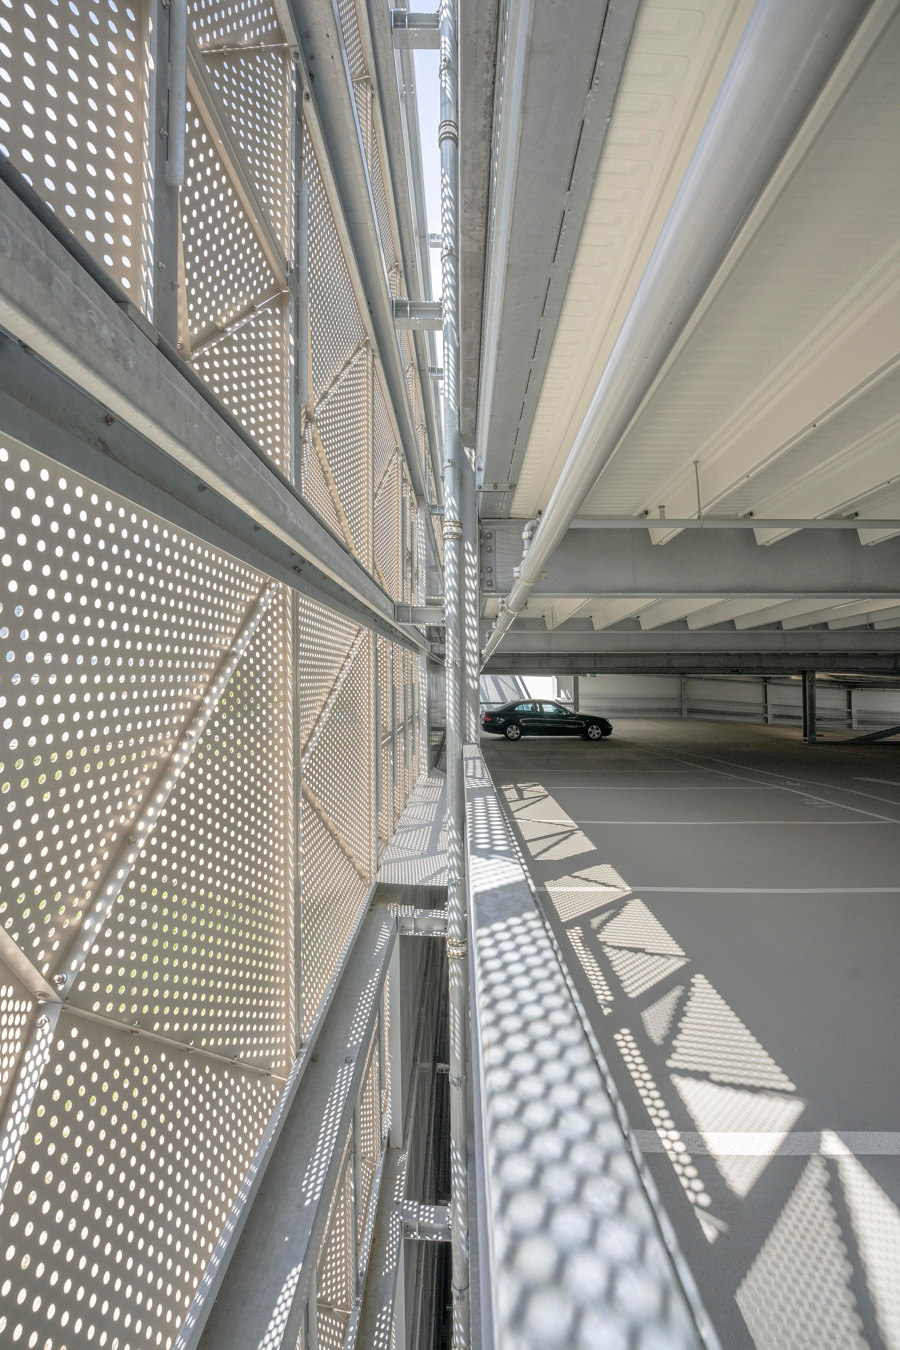 Parkeergarage A1 von XVW architectuur | Industriebauten